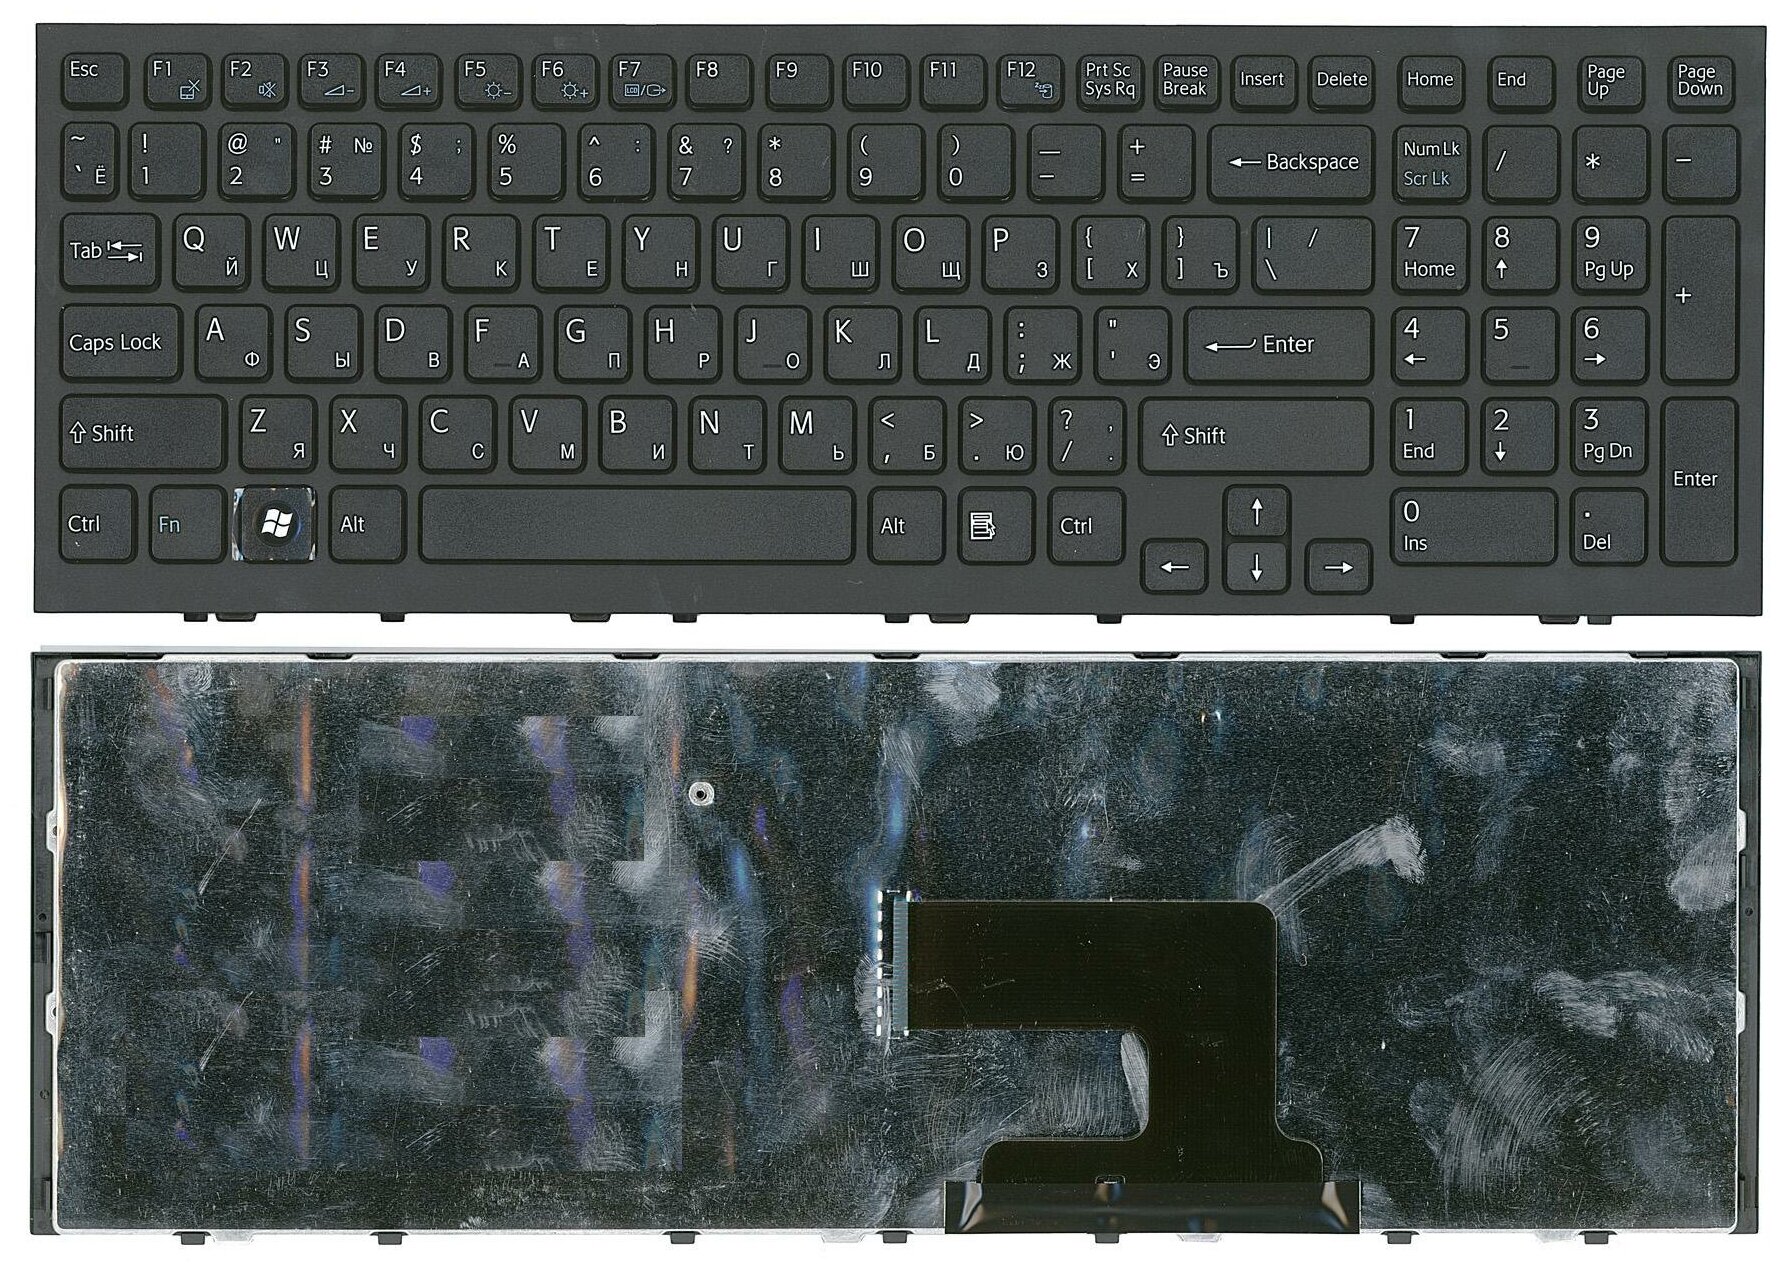 Клавиатура для ноутбука Sony Vaio VPC-EH VPCEH черная с черной рамкой